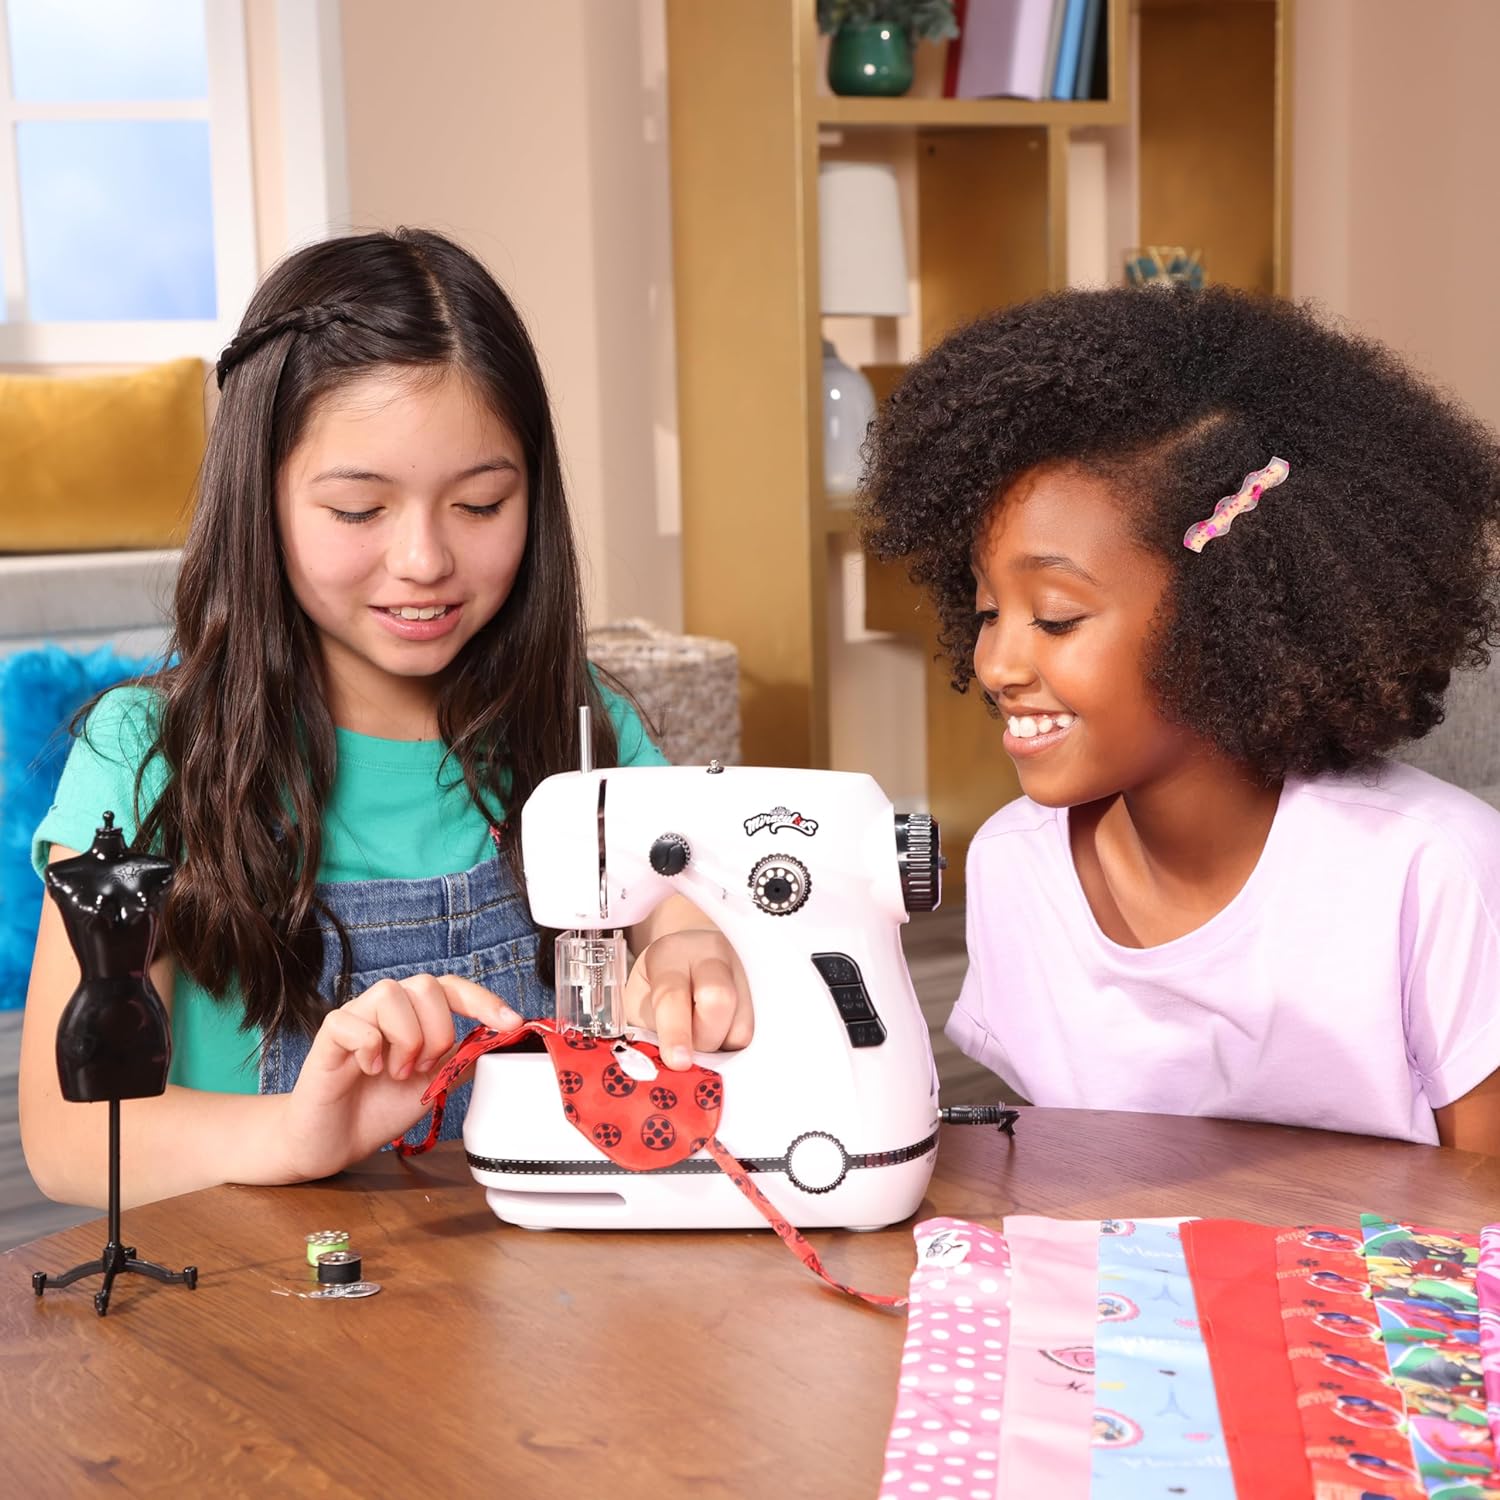 ZAG Toys - Miraculous Ladybug - Miraculous Sewing Machine Set